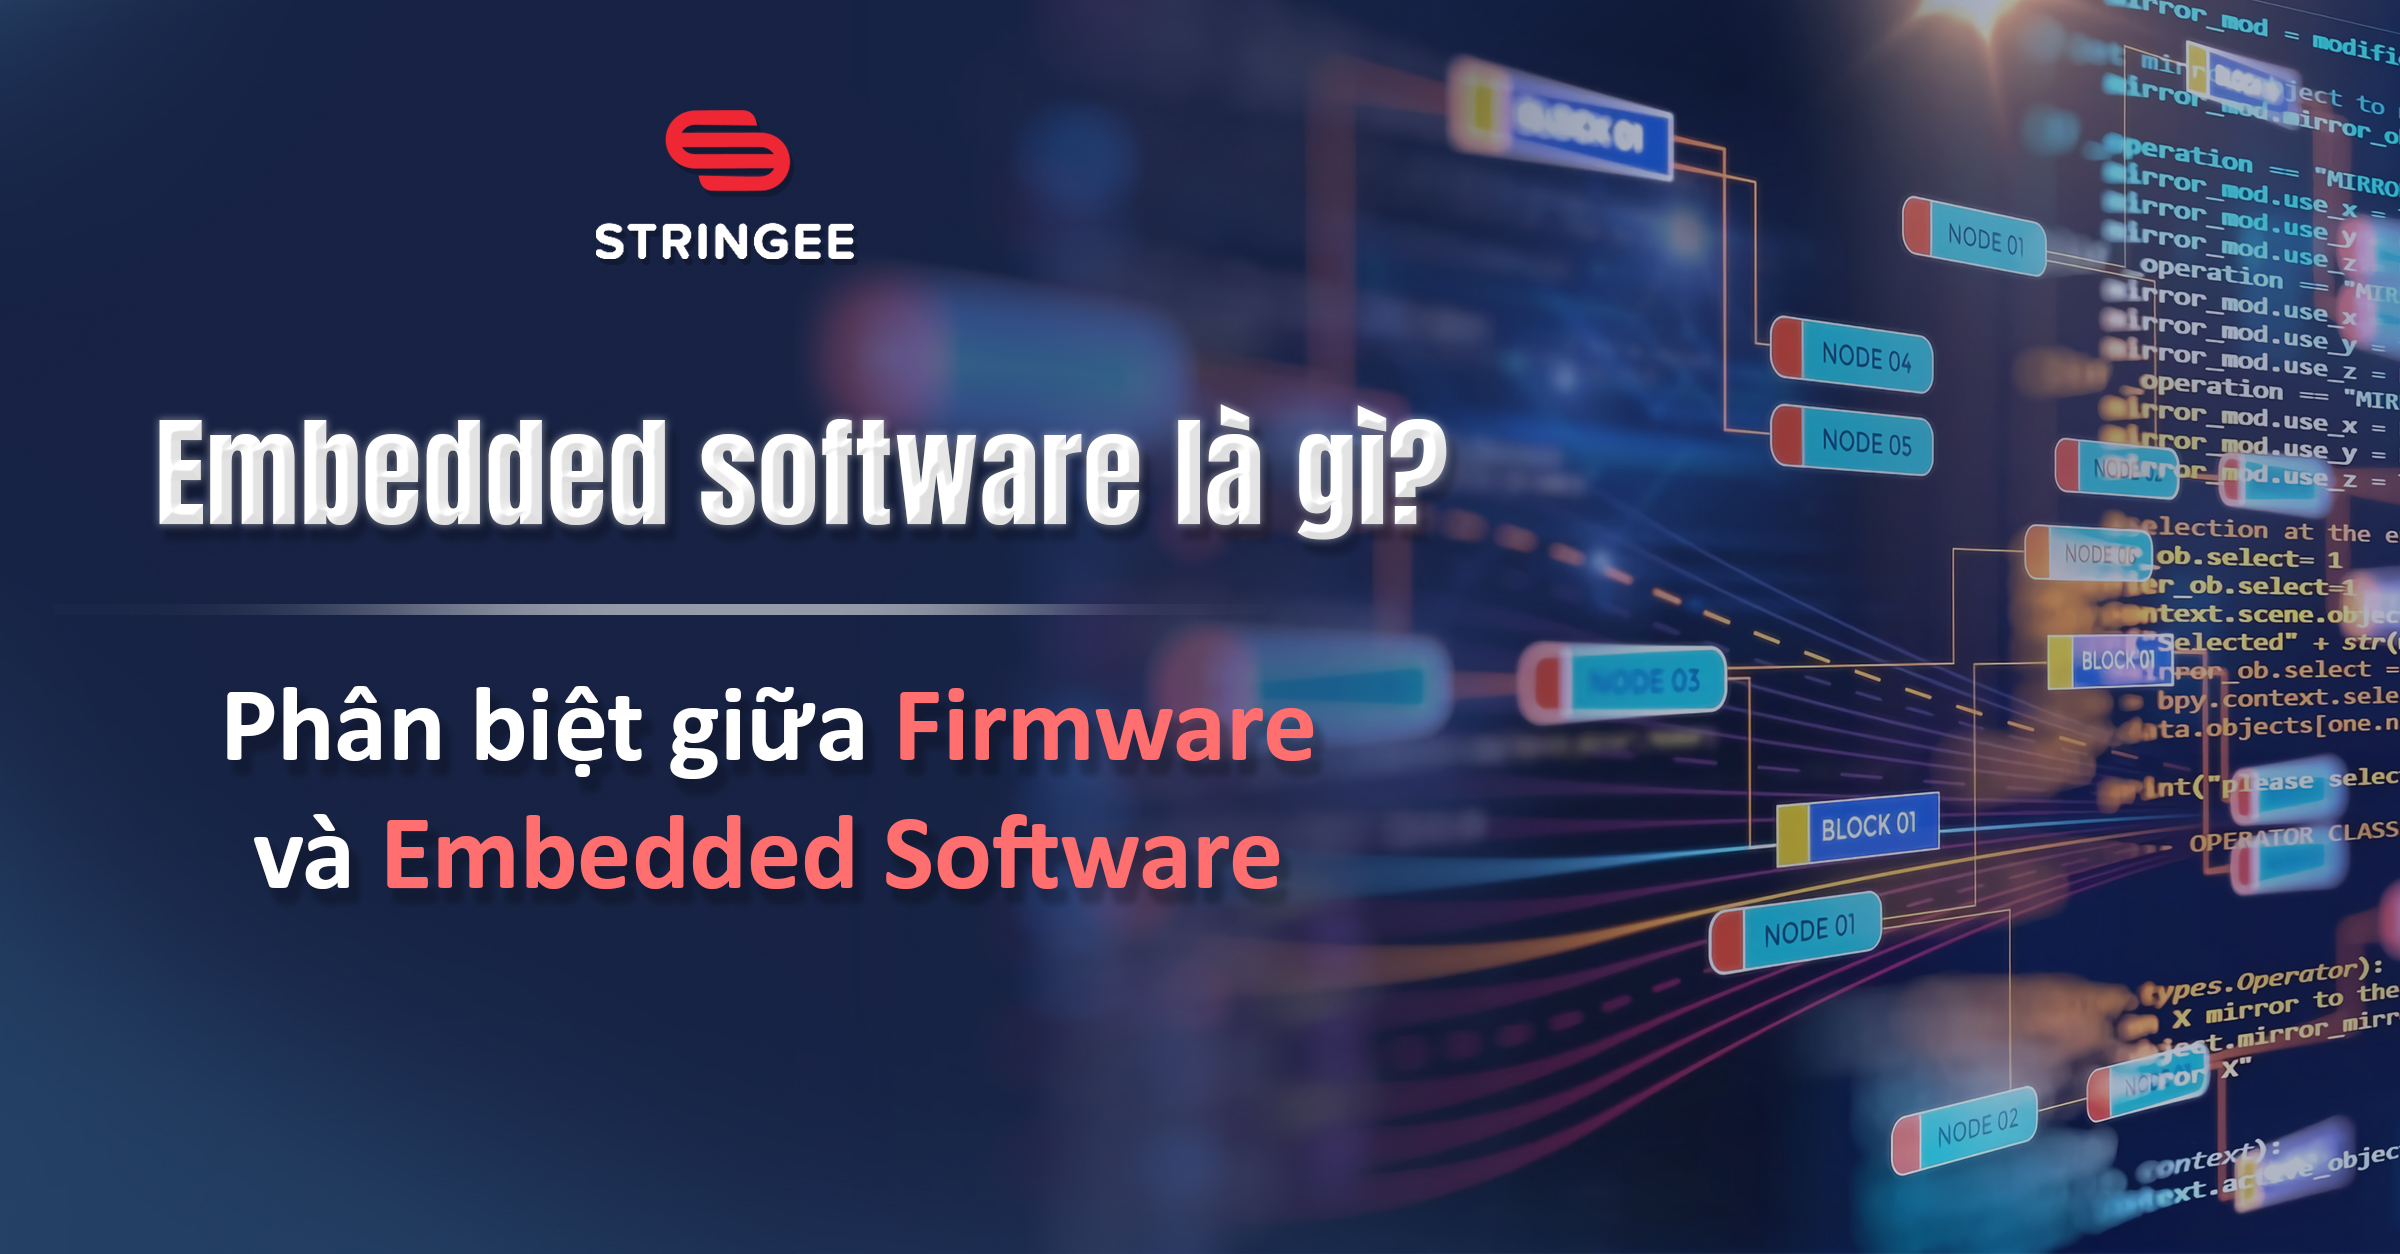 Embedded software là gì? Phân biệt giữa Firmware và Embedded Software